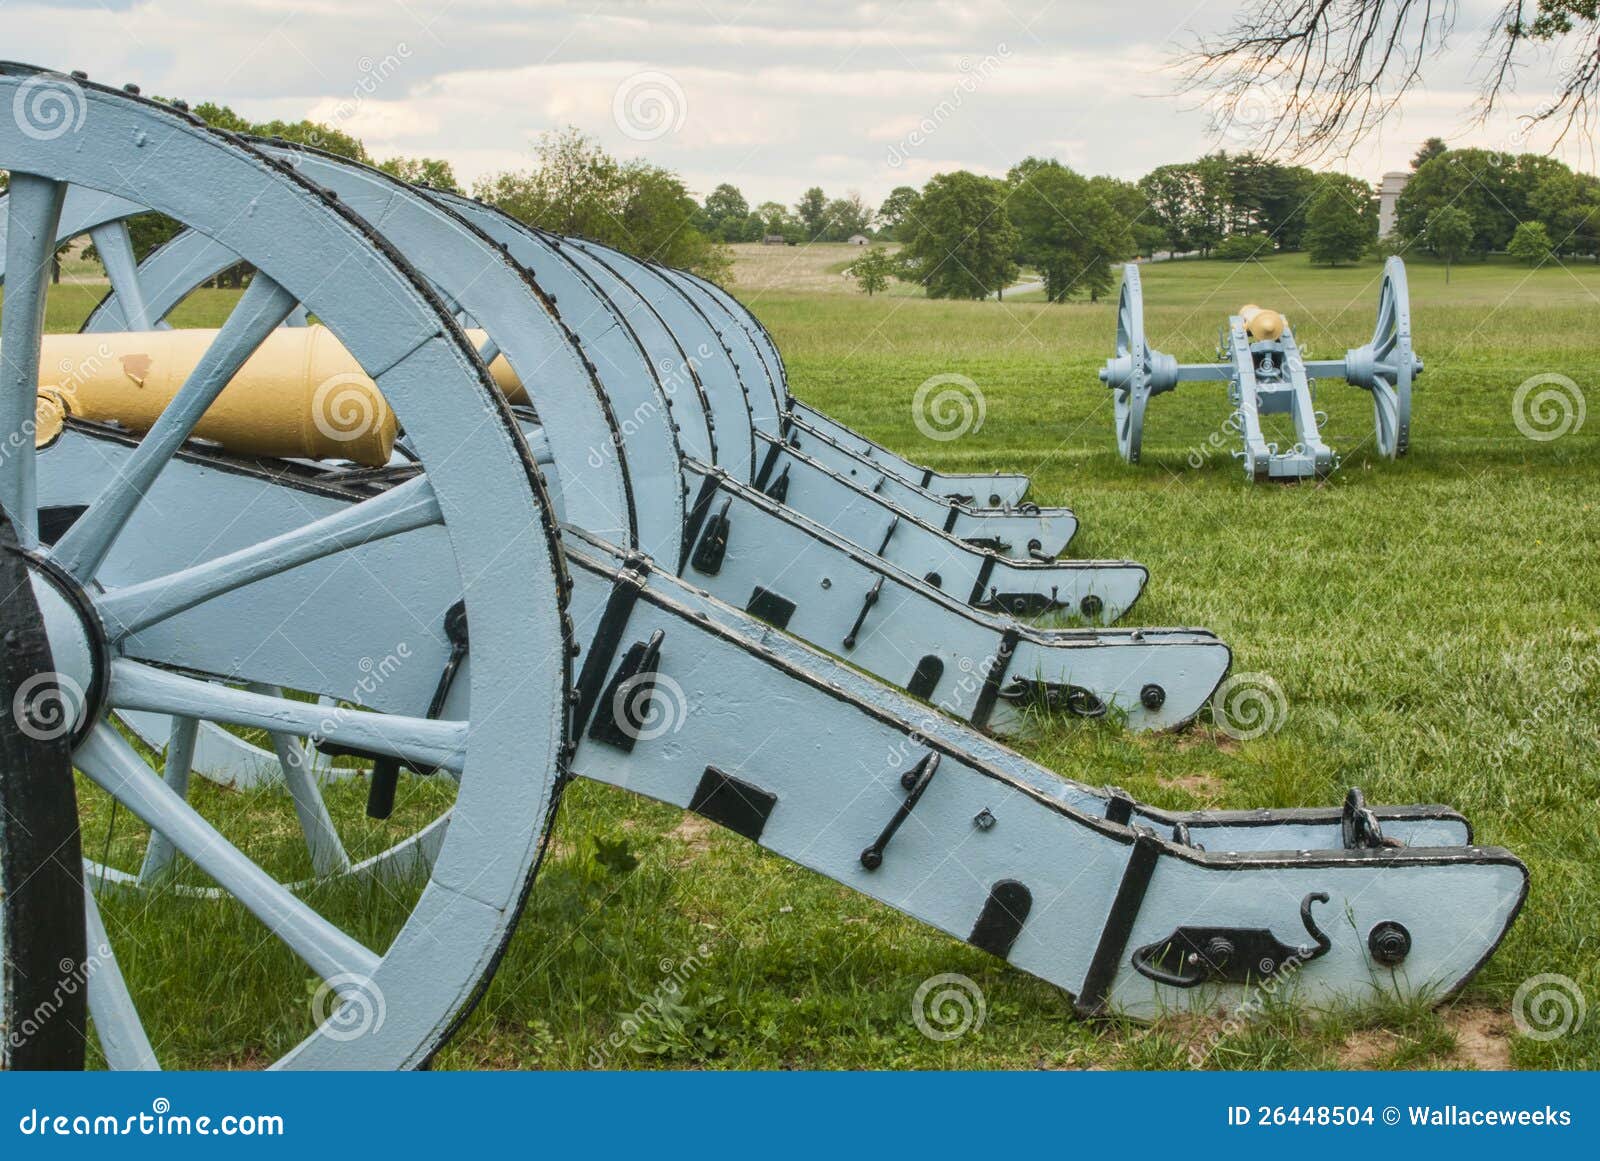 revolutionary war cannons